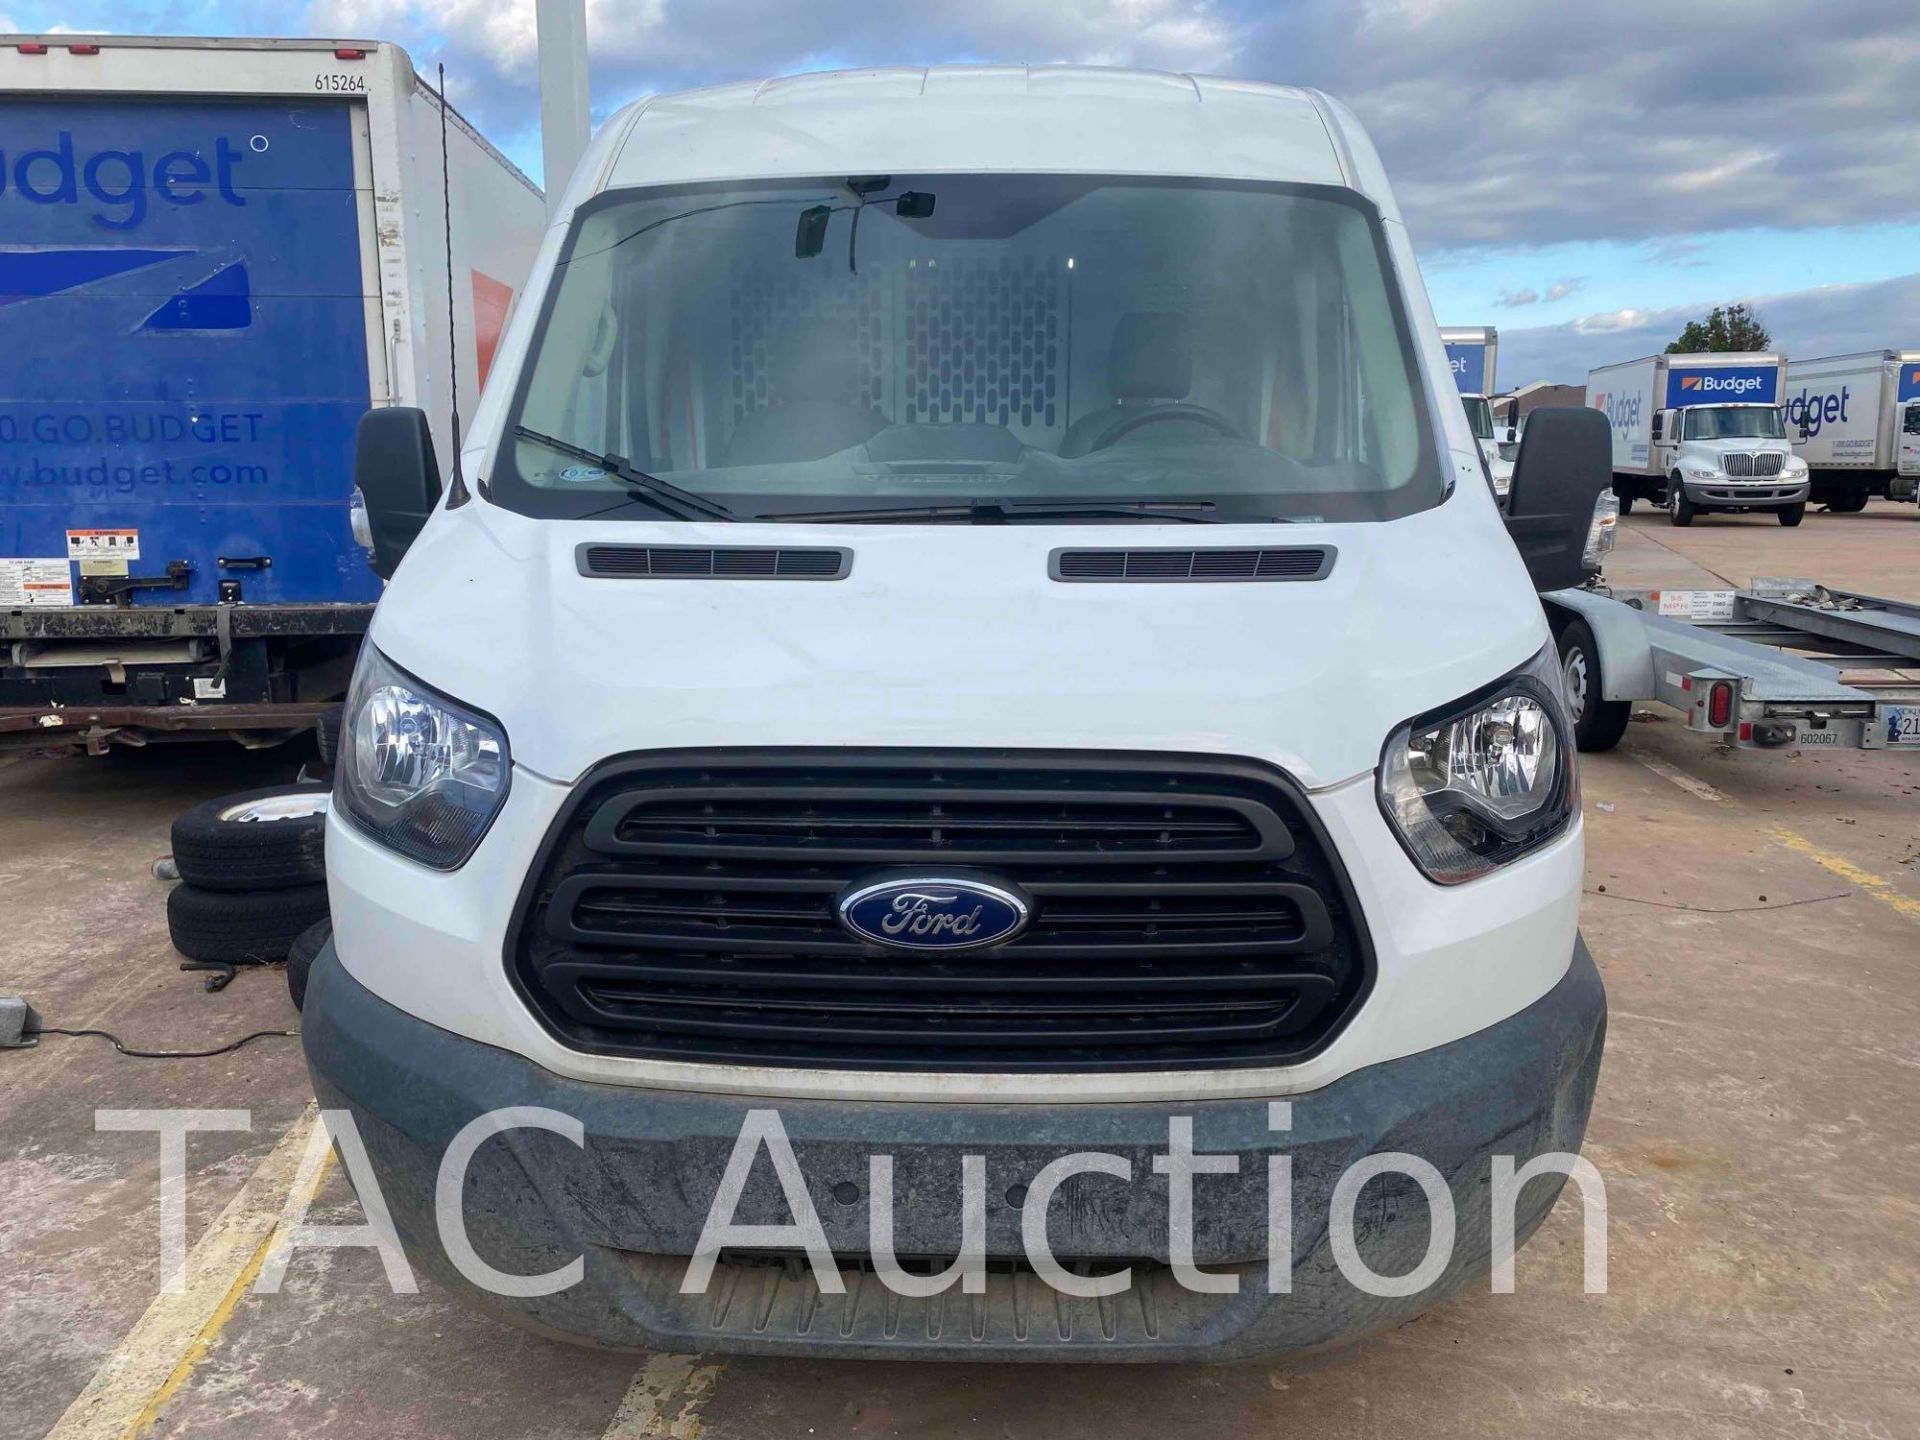 2019 Ford Transit 150 Cargo Van - Image 2 of 44